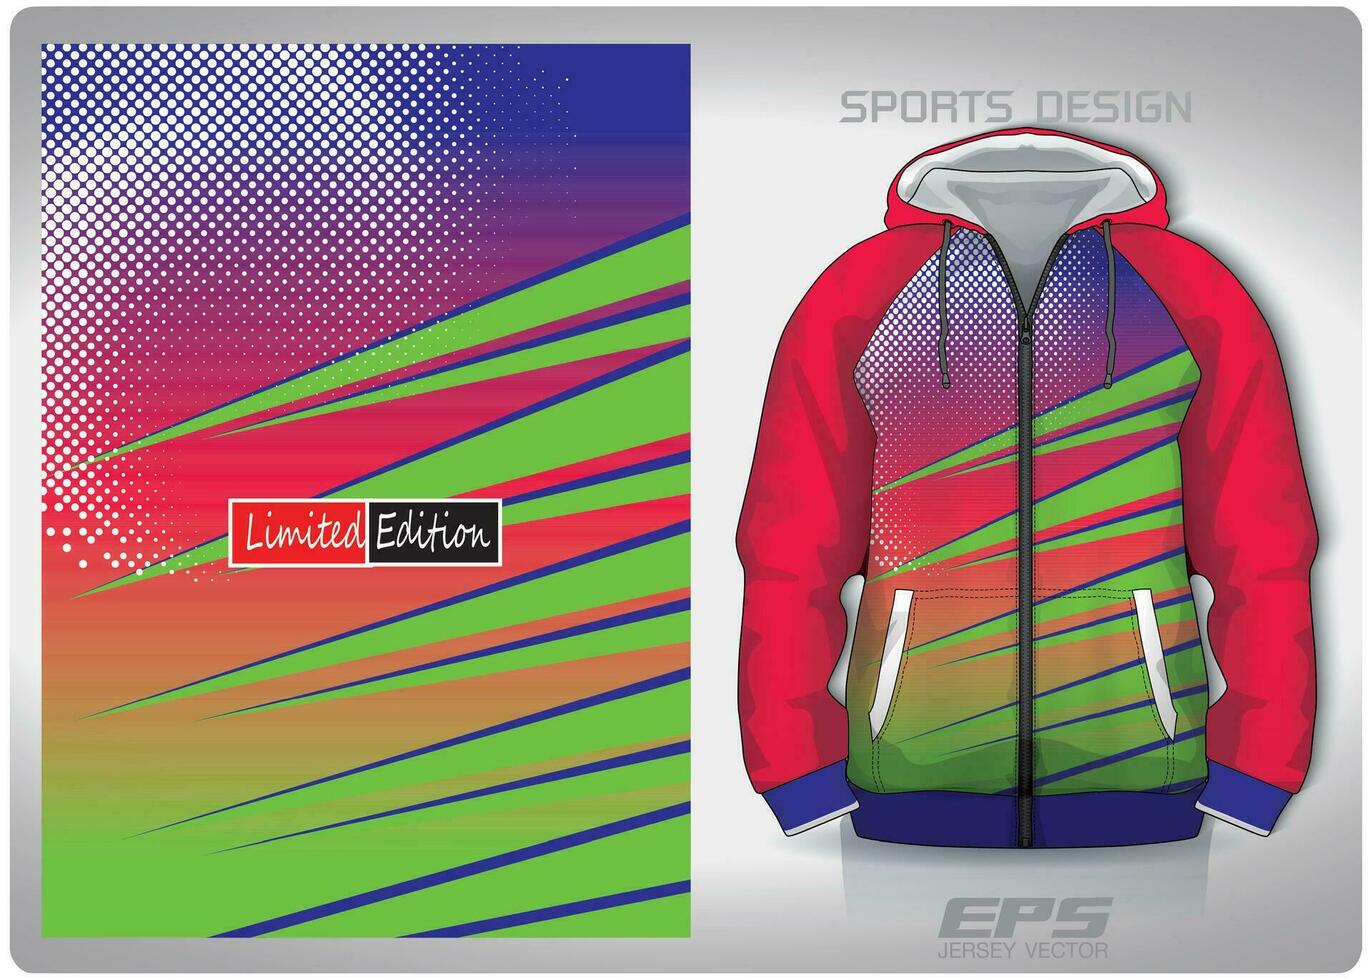 vektor sporter skjorta bakgrund bild.rosa grön hastighet mönster design, illustration, textil- bakgrund för sporter lång ärm luvtröja, jersey luvtröja